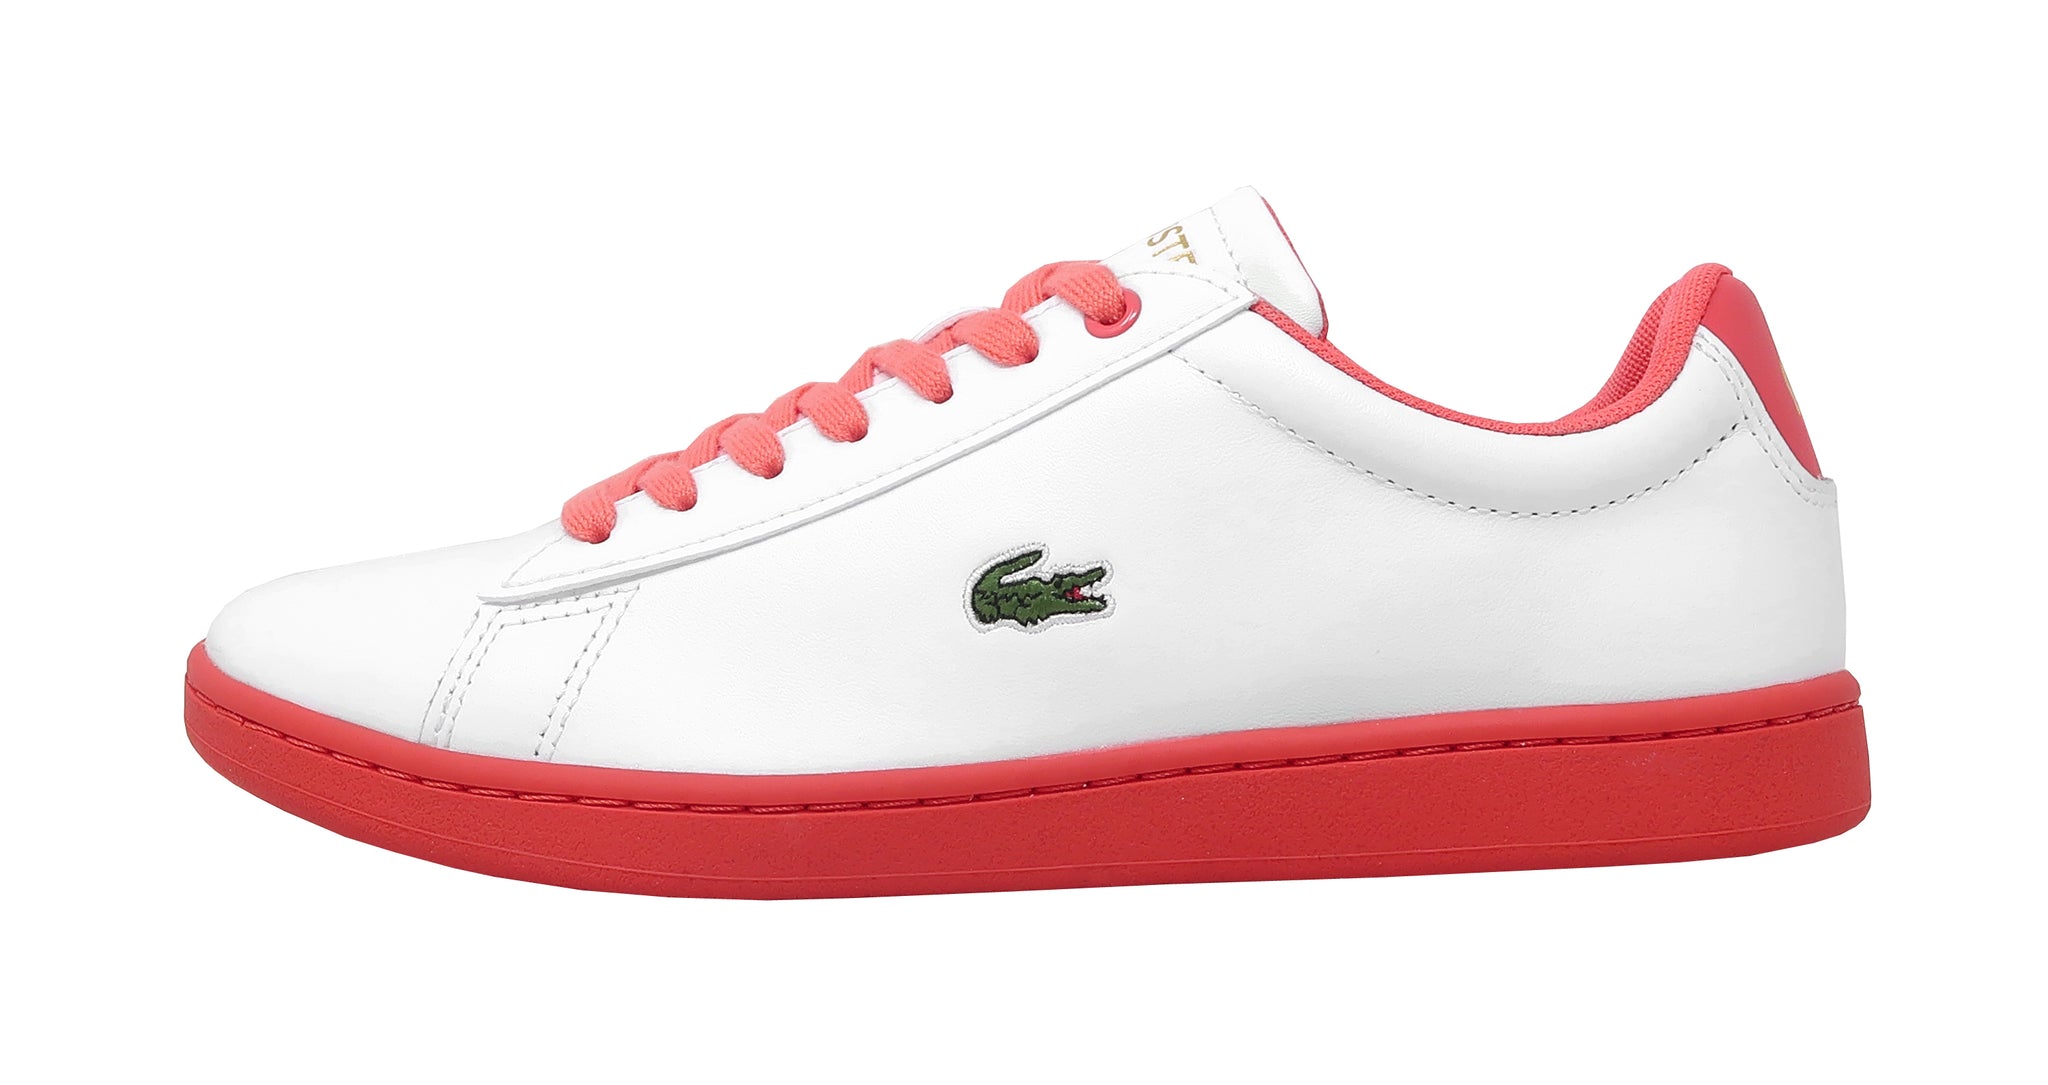 romersk Jeg er stolt reform Lacoste Womens' Hydez Leather White/Dark Pink Shoes – Shoe Hut Online